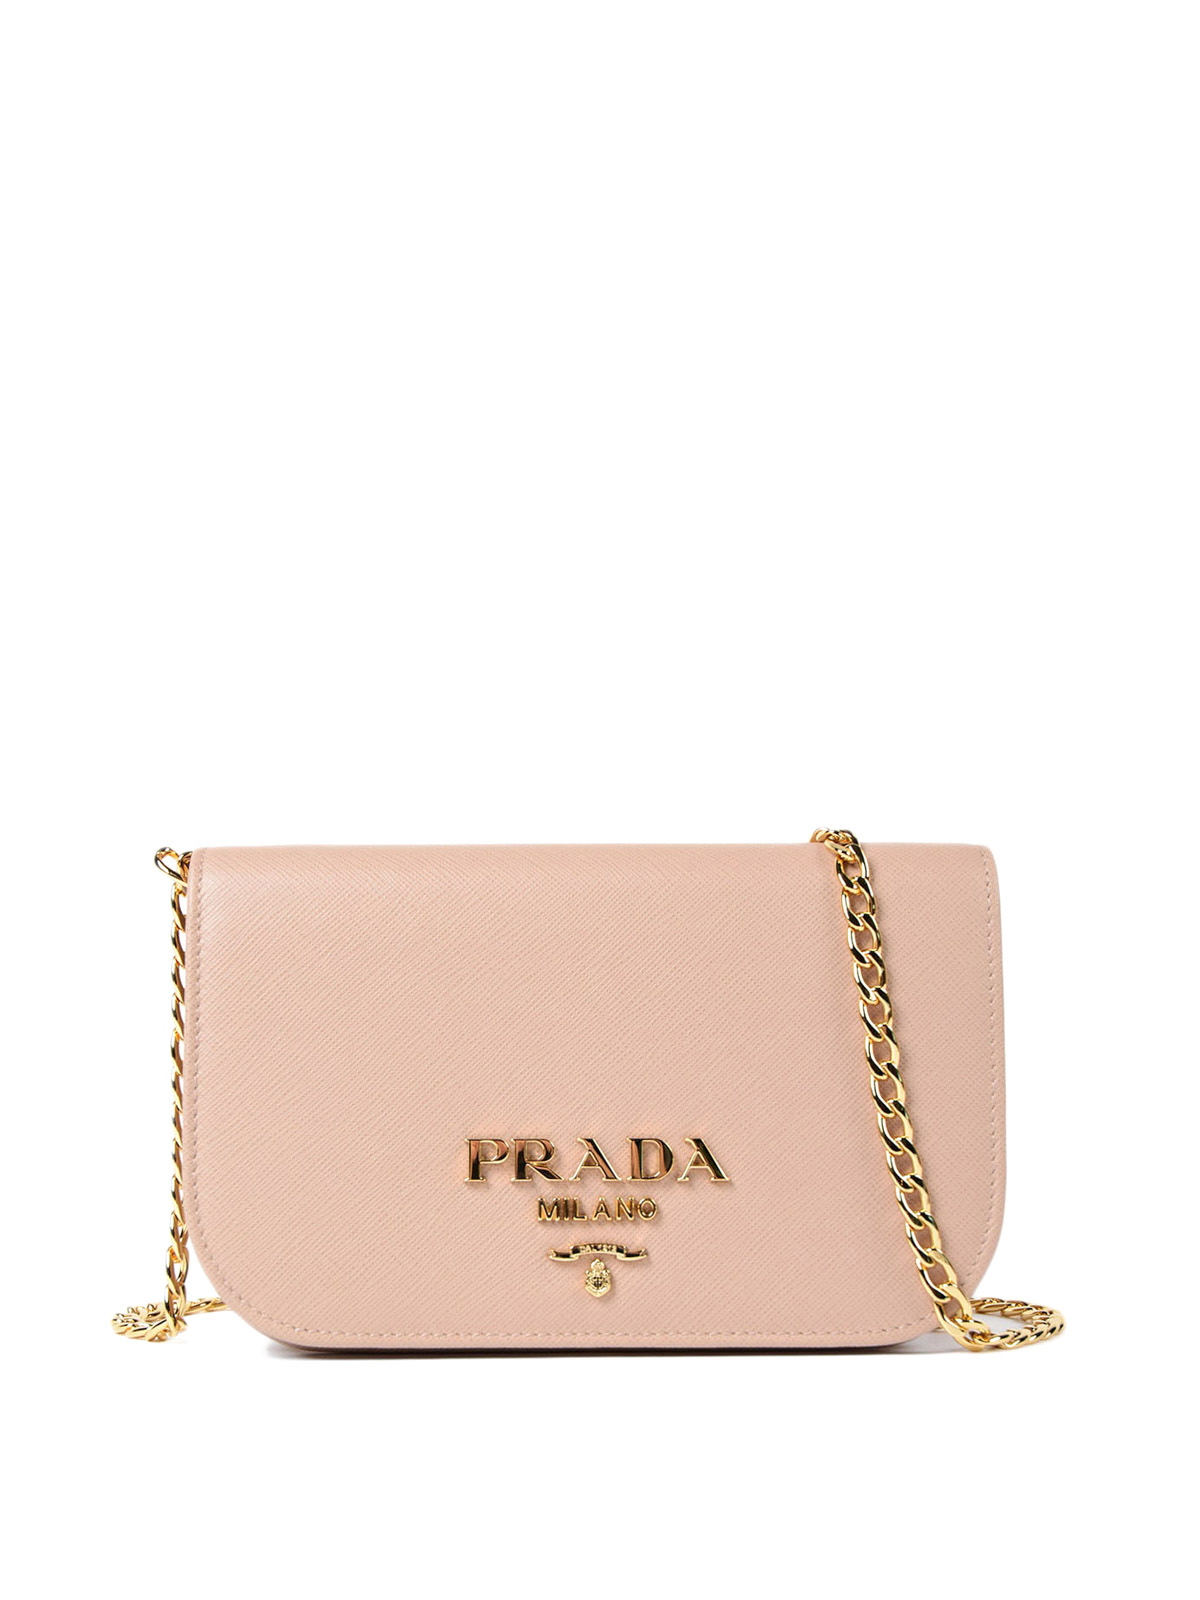 small pink prada bag